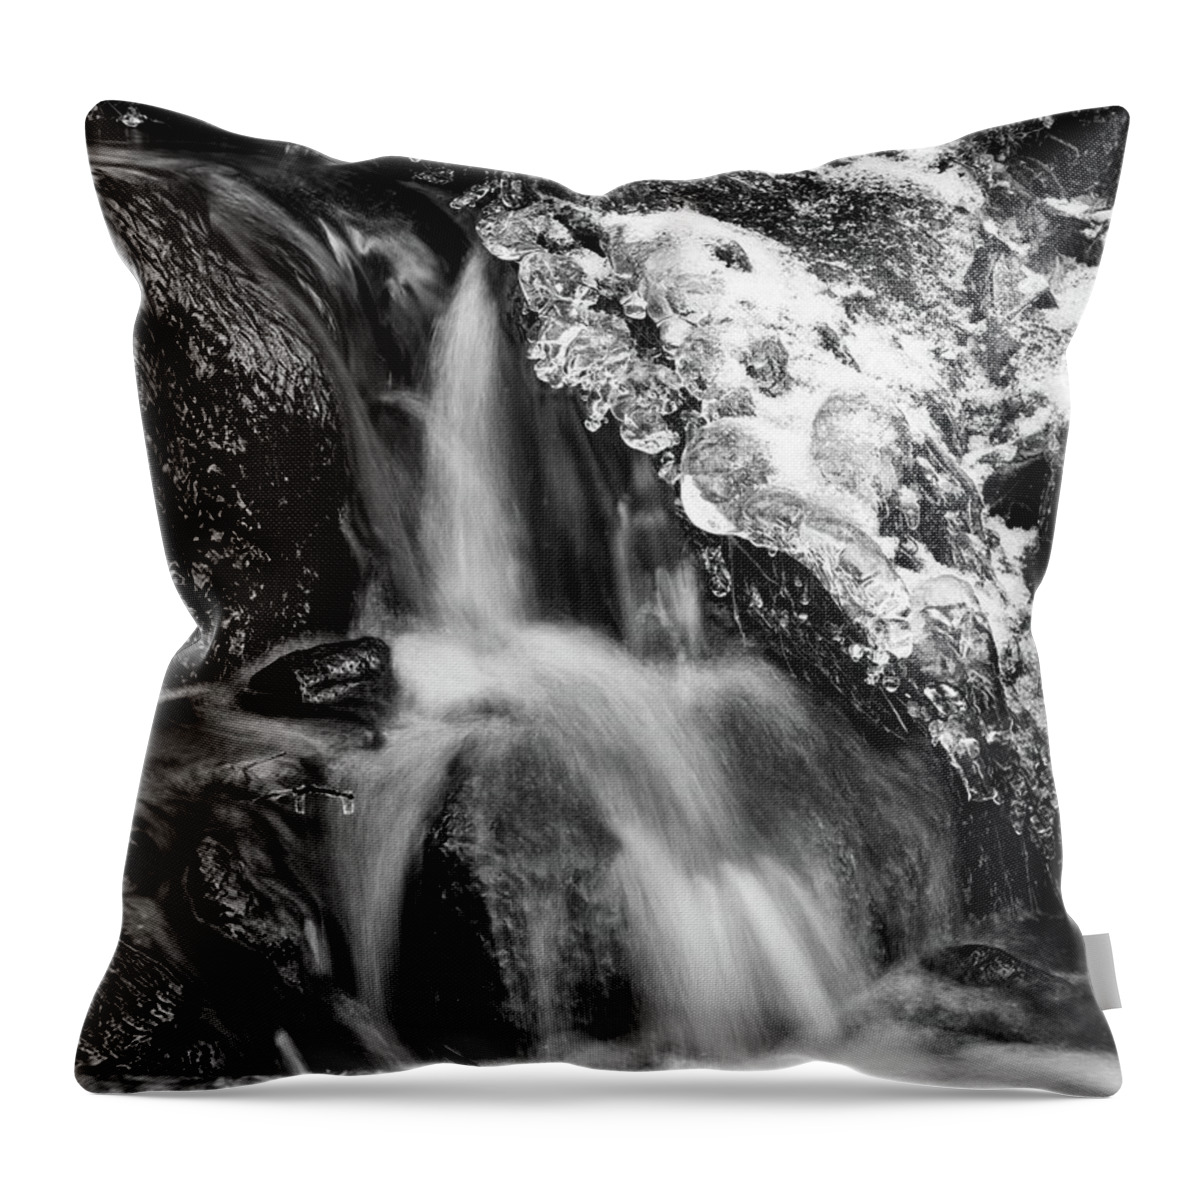 Jouko Lehto Throw Pillow featuring the photograph Ice jevels by the brook 3 bw by Jouko Lehto